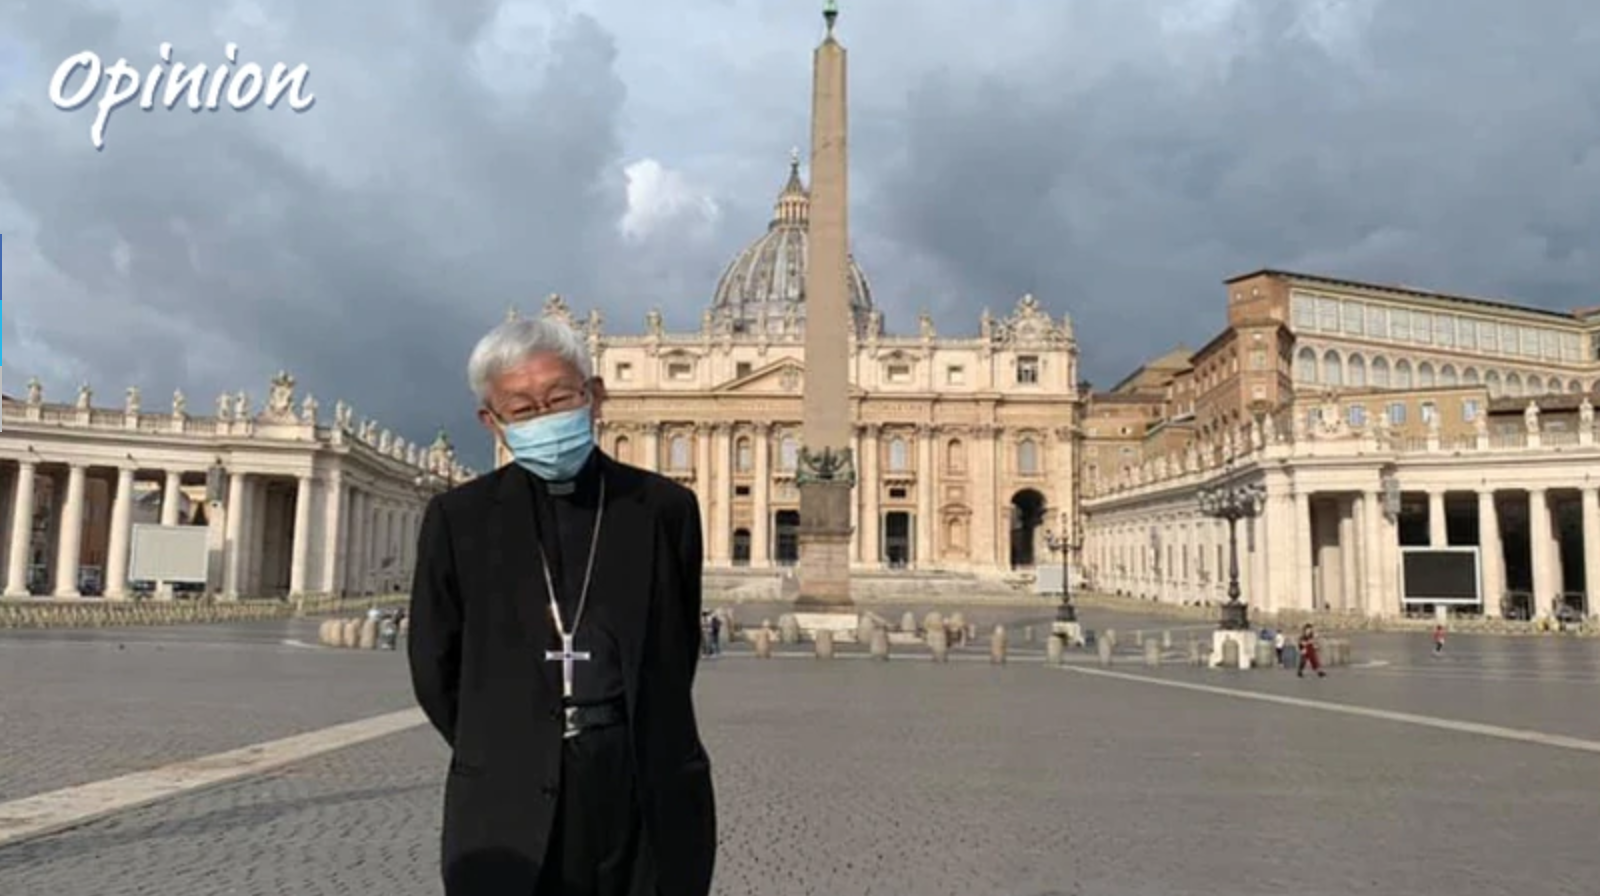 Il messaggio del Cardinale Zen è stato ricevuto forte e chiaro dal Parlamento italiano